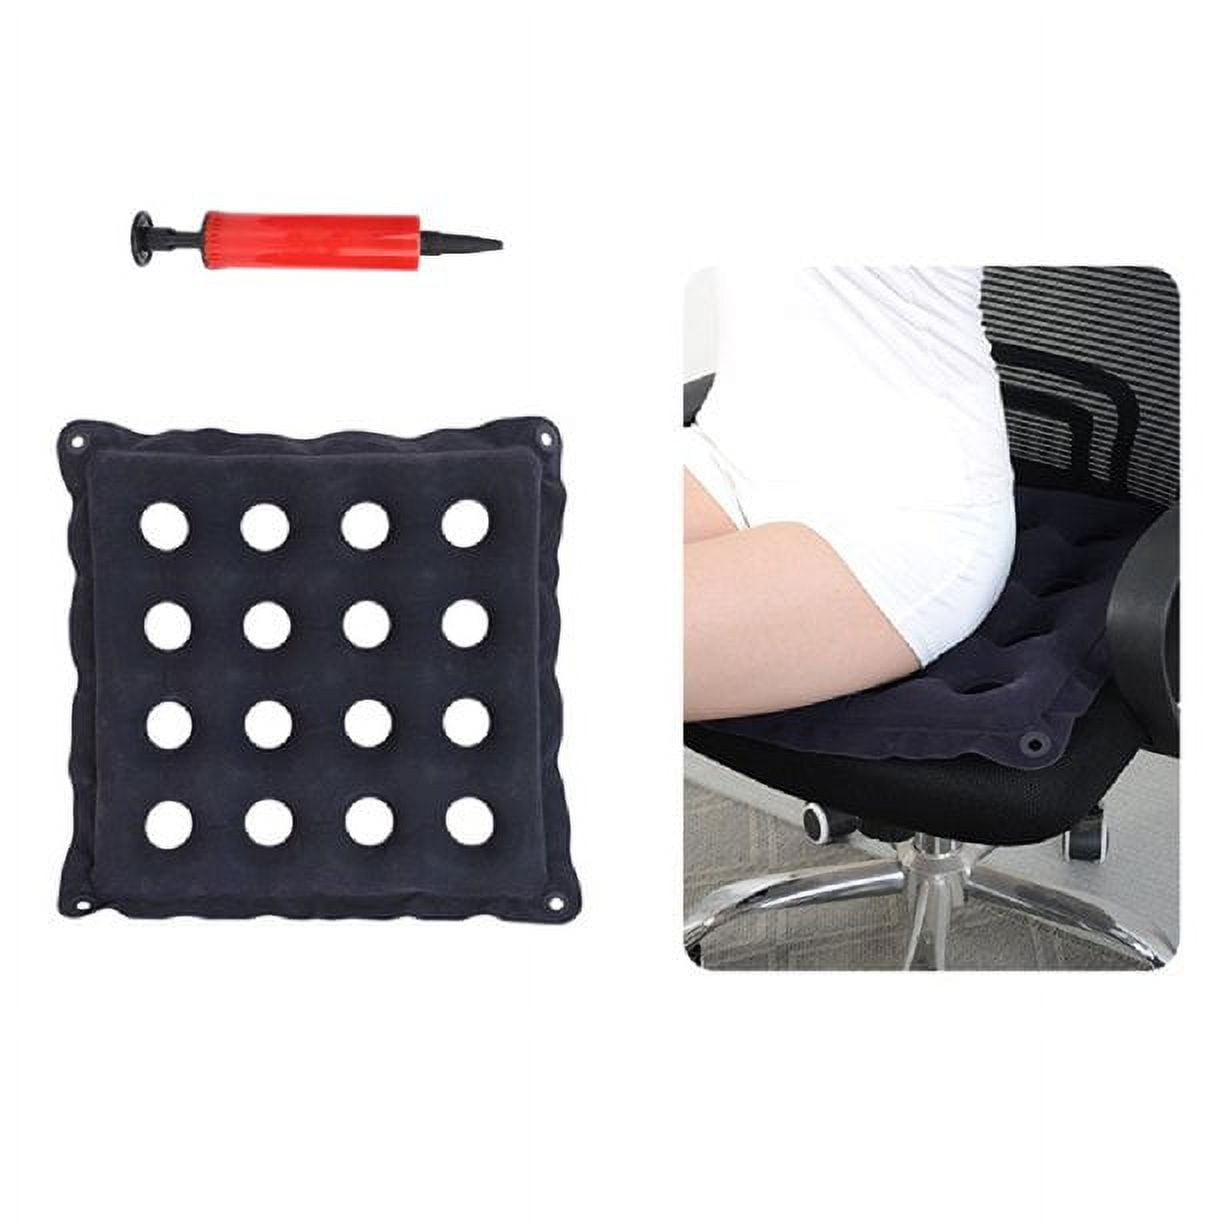 Air Cushion Inflatable Seat, Air Cell Cushion Anti Decubitus Wheelchair Seat  Air Cushion Mattress with 9 Holes Breathable & Plastic,Self-Inflating  Cushion for Longer Sitting Car/Office Wheelchair 